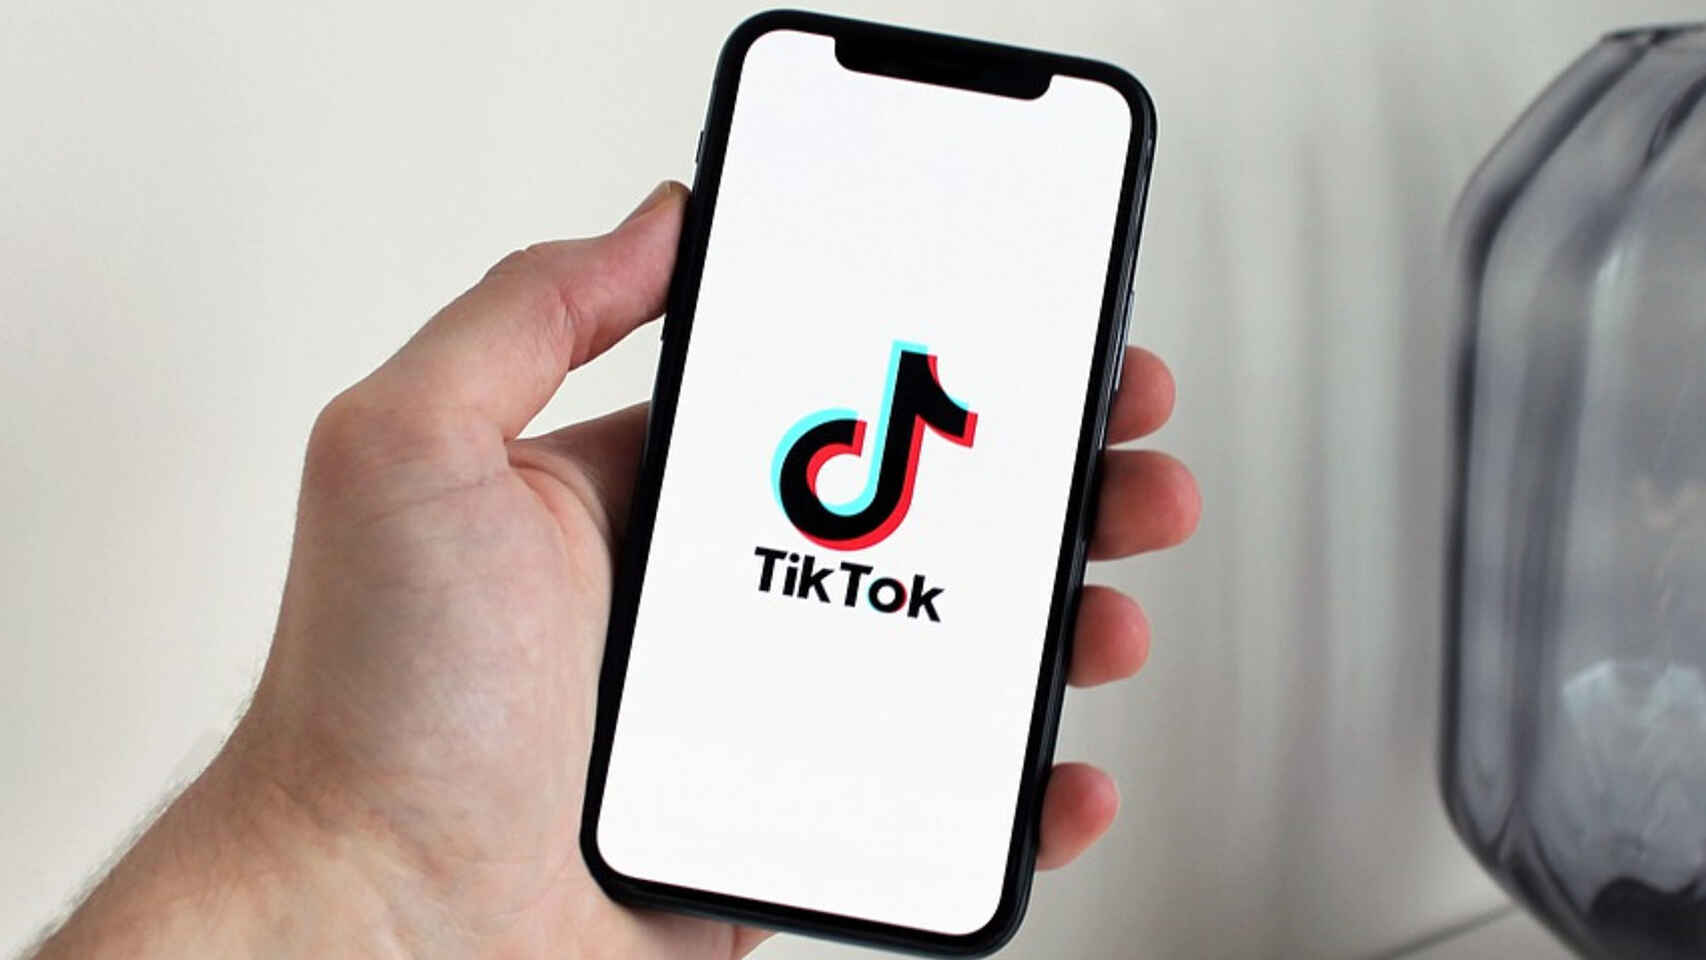 cara download video TikTok tanpa watermark